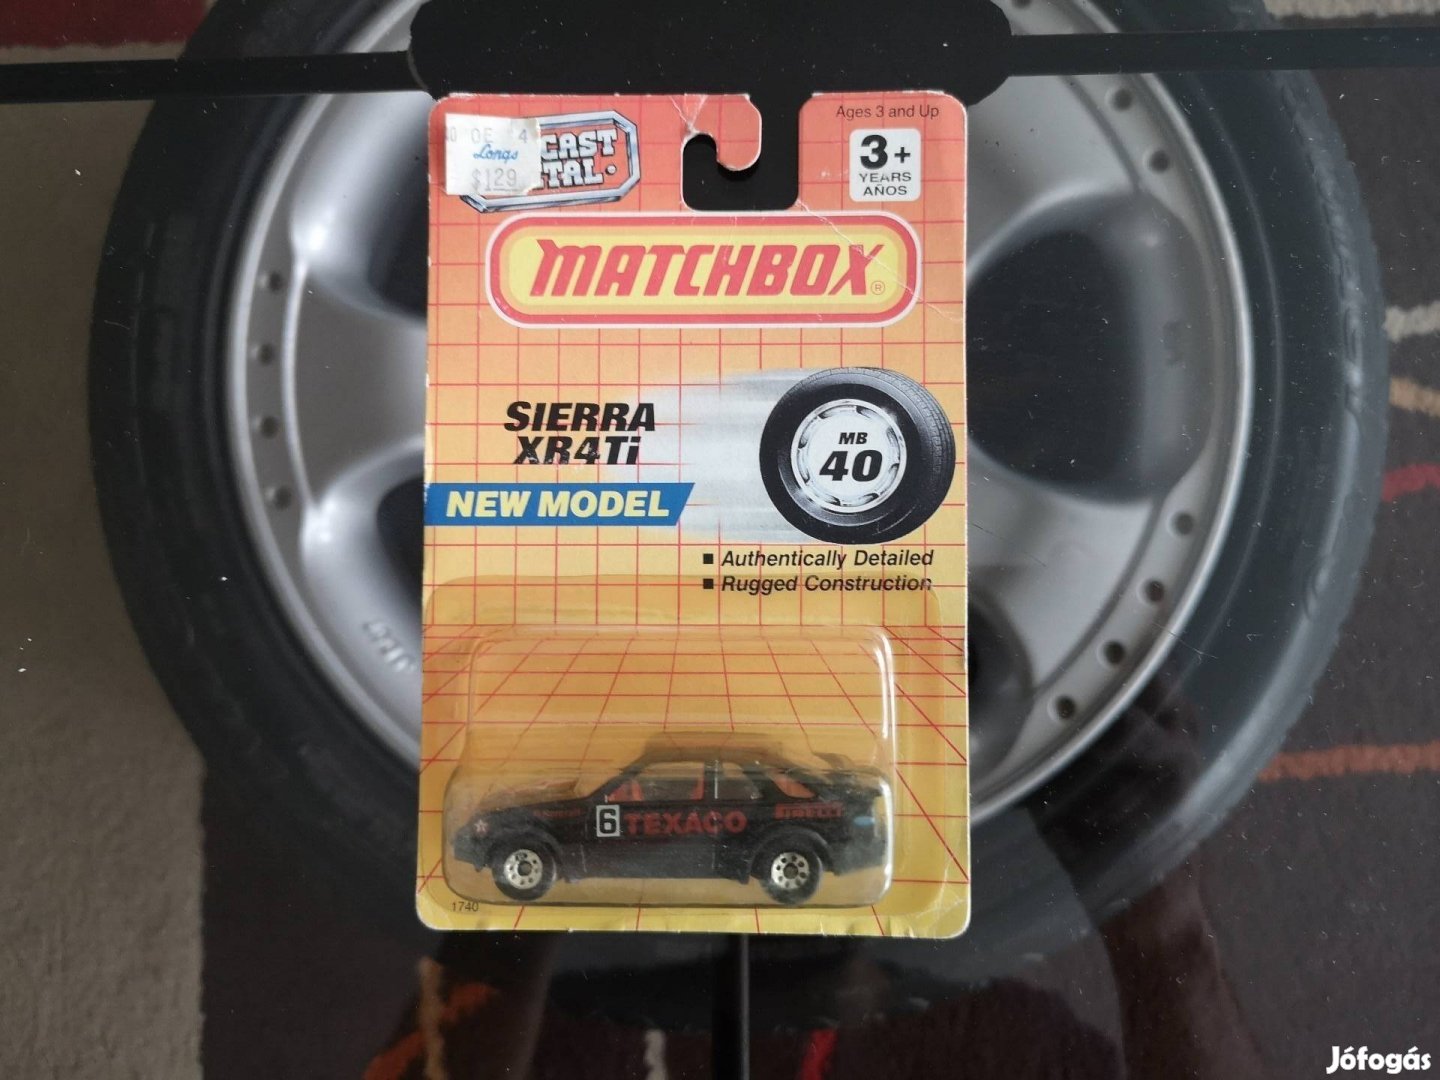 Texaco Ford Sierra XR4i Matchbox MB40